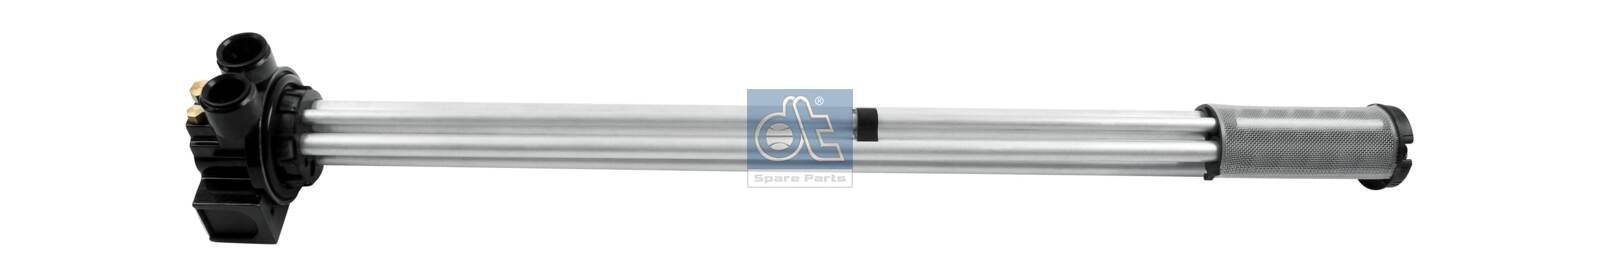 DT Spare Parts 6.33816 Fuel level sensor 600mm